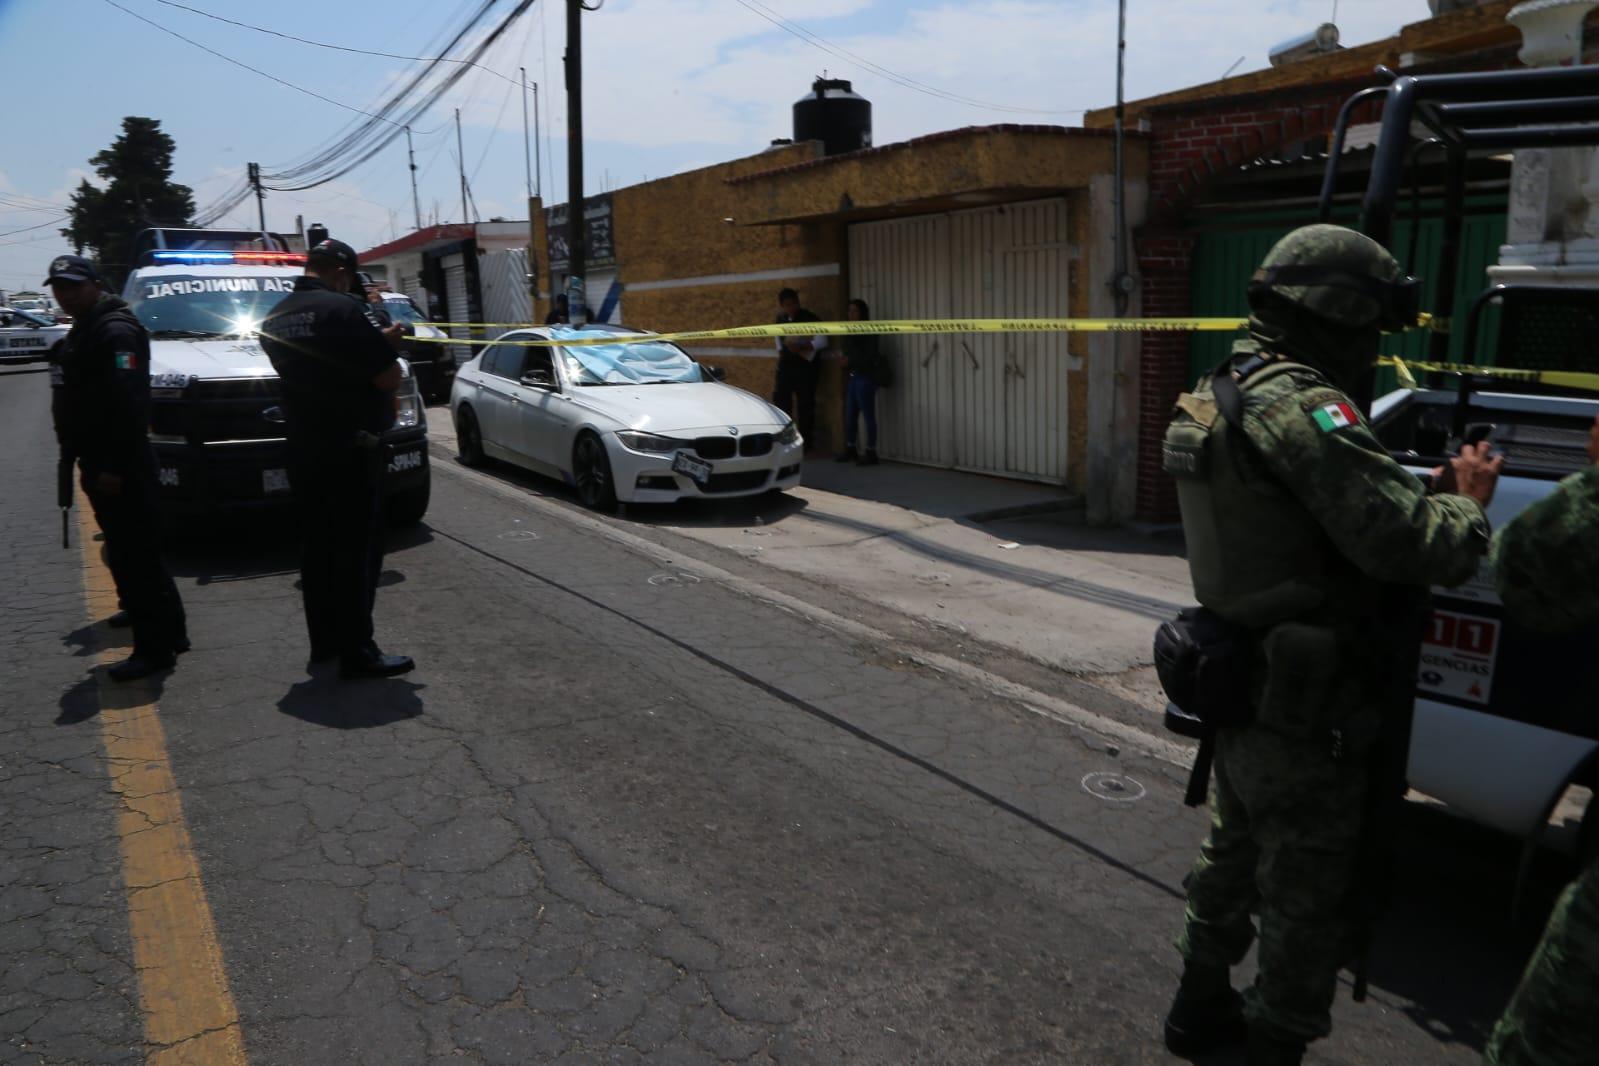 A balazos ultiman a dos hombres a bordo de un vehículo en Popocatla, Ixtacuixtla